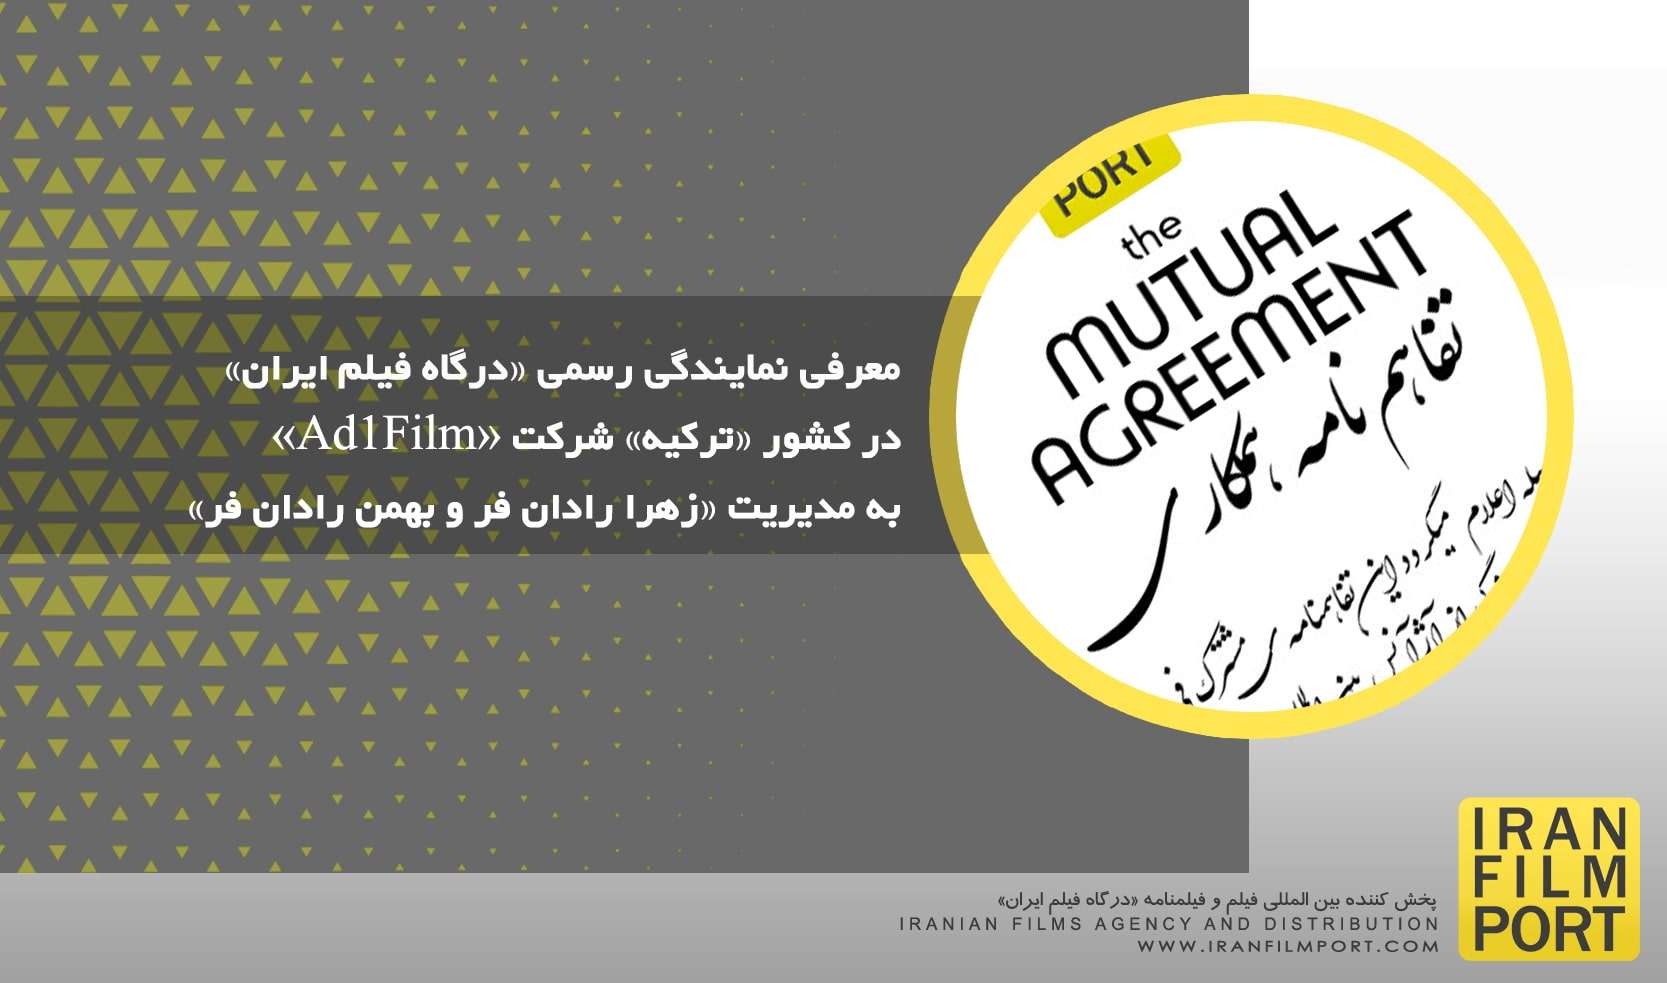 معرفی نمایندگی رسمی «درگاه فیلم ایران» در کشور «ترکیه» شرکت AD1 FILM